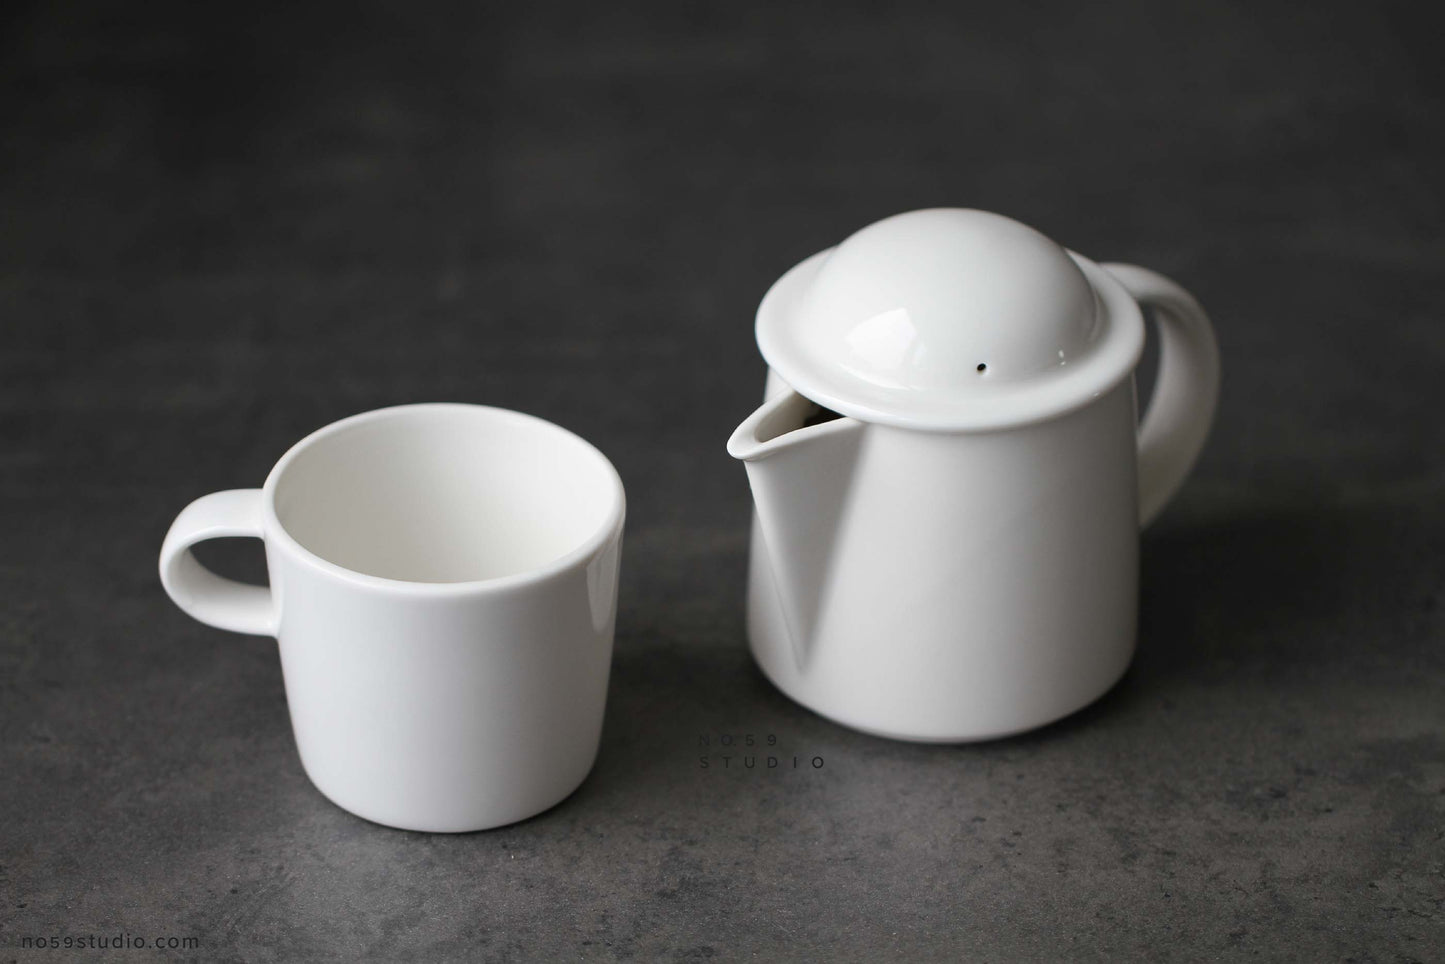 White Porcelain Tea for One Set